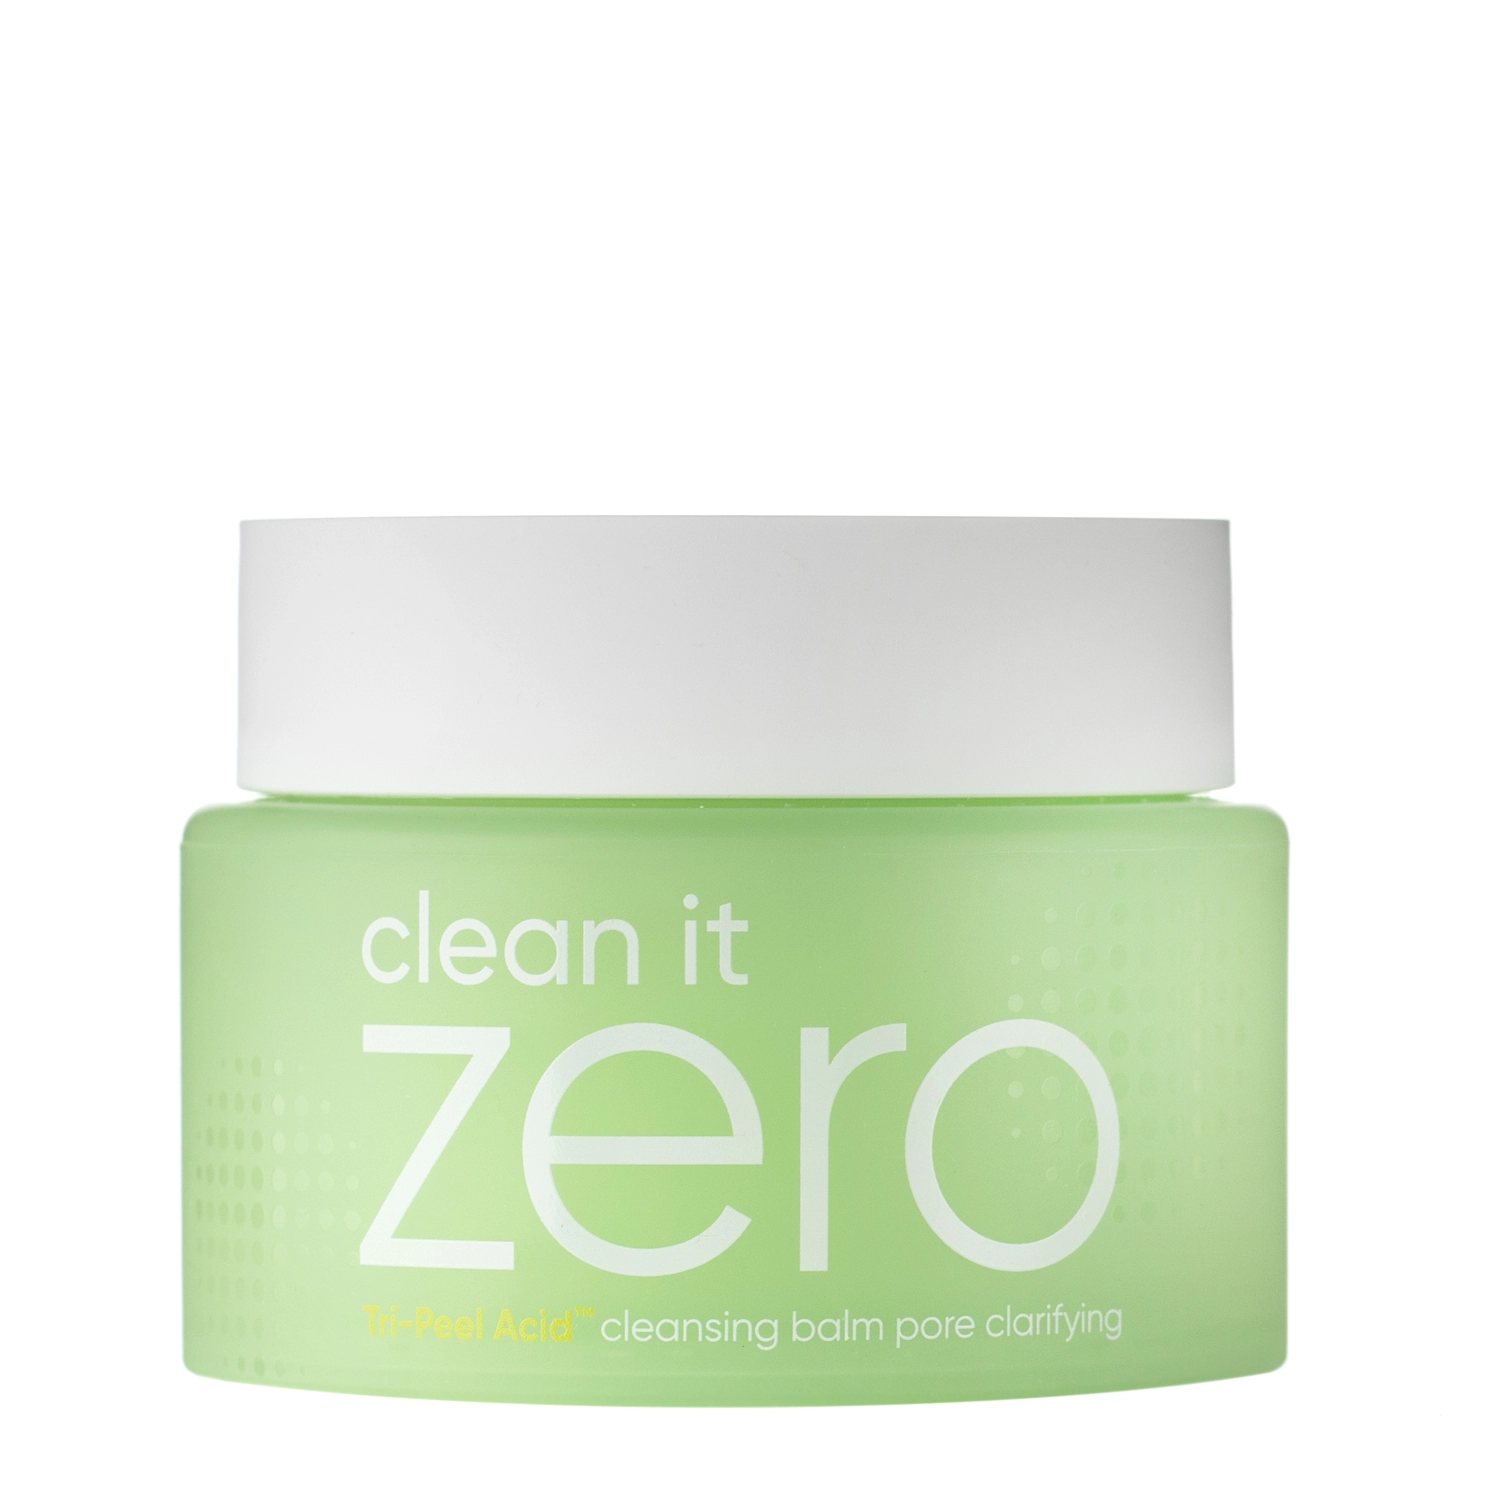 Banila Co - Clean It Zero Cleansing Balm - Pore Clarifying - Ulei de sorbet pentru curățarea feței - 100ml